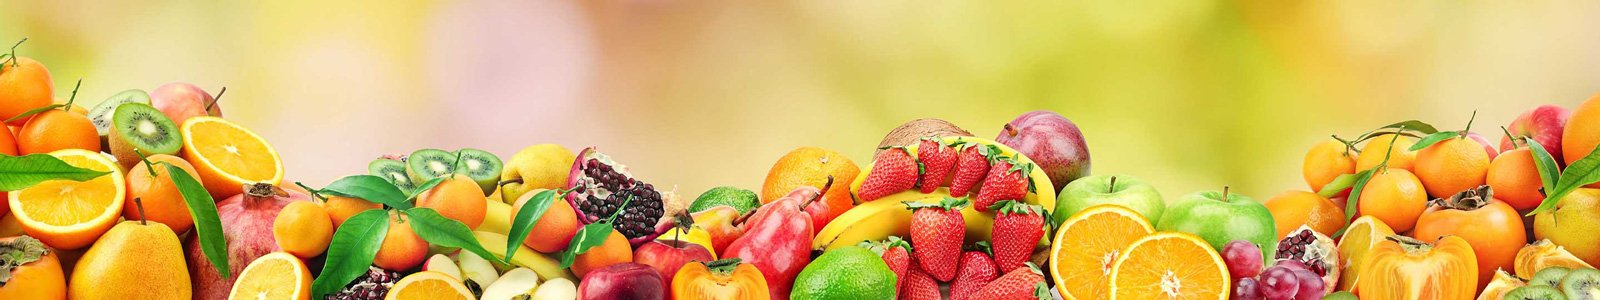 №6774 - Различные фрукты и ягоды